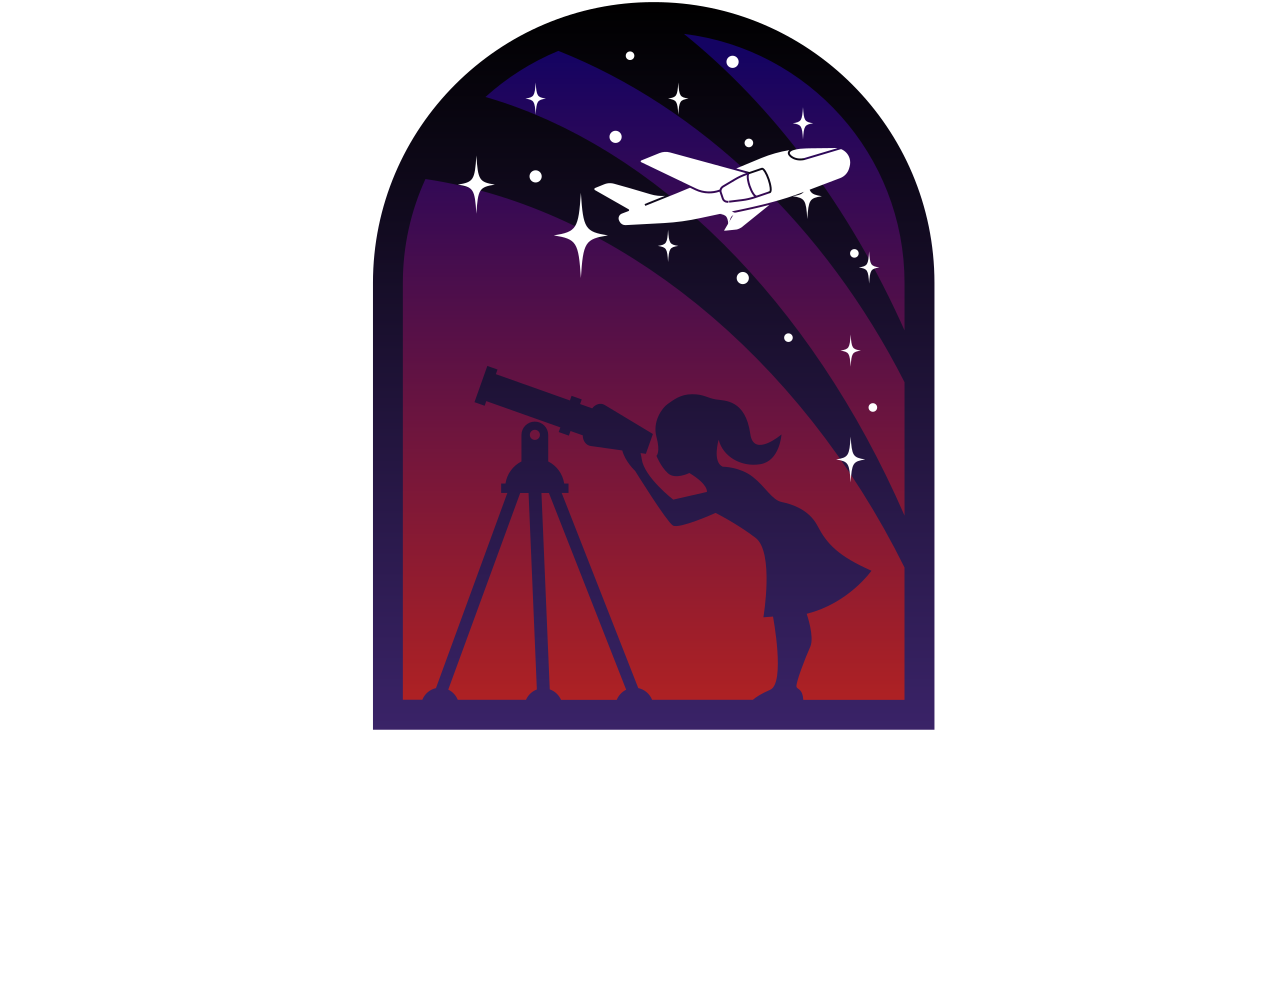 Scarlett Skies Initiative's logo